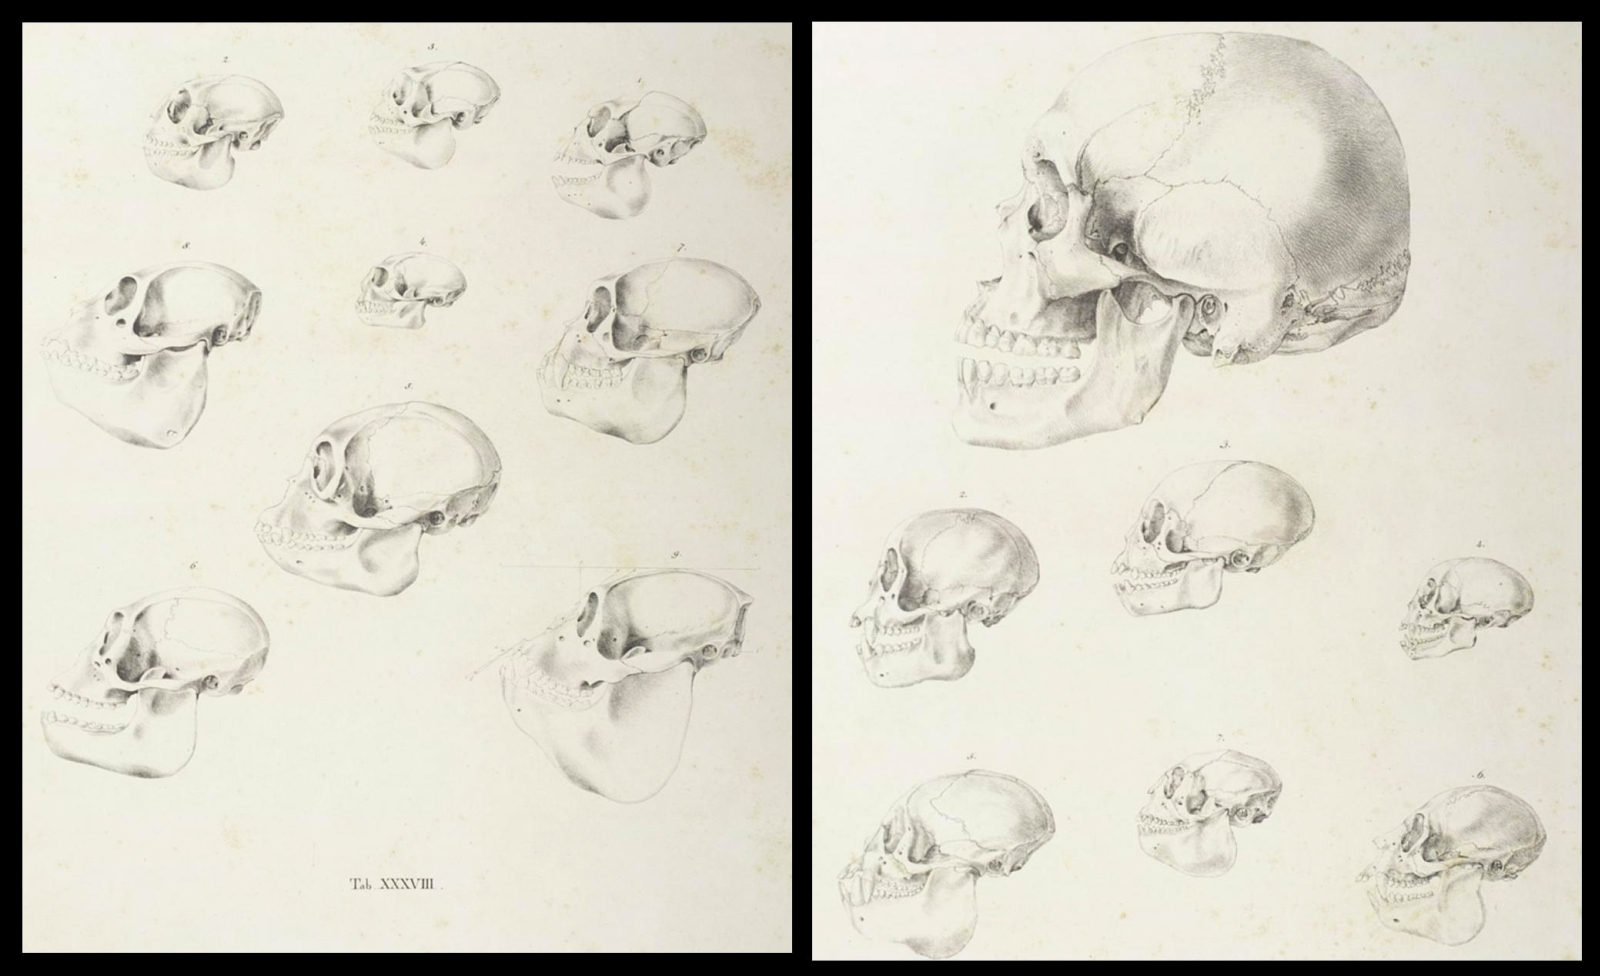 Ape and Human skulls